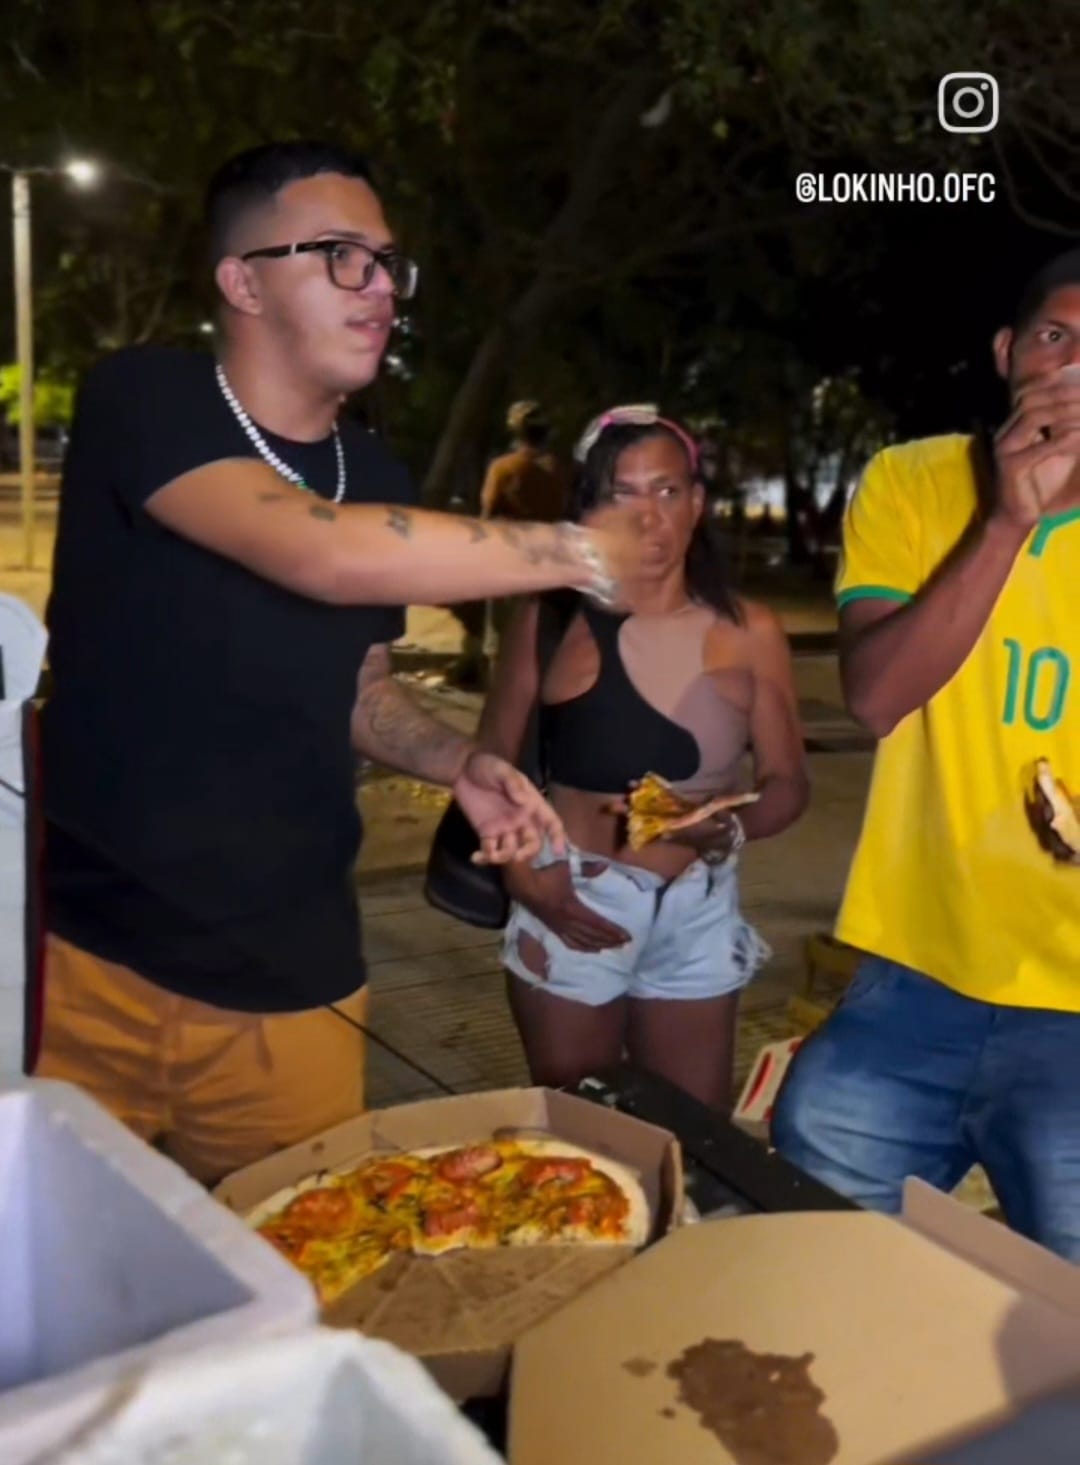 Influencer Lokinho realiza ação social e distribui mais de 30 pizzas para moradores de rua em Teresina